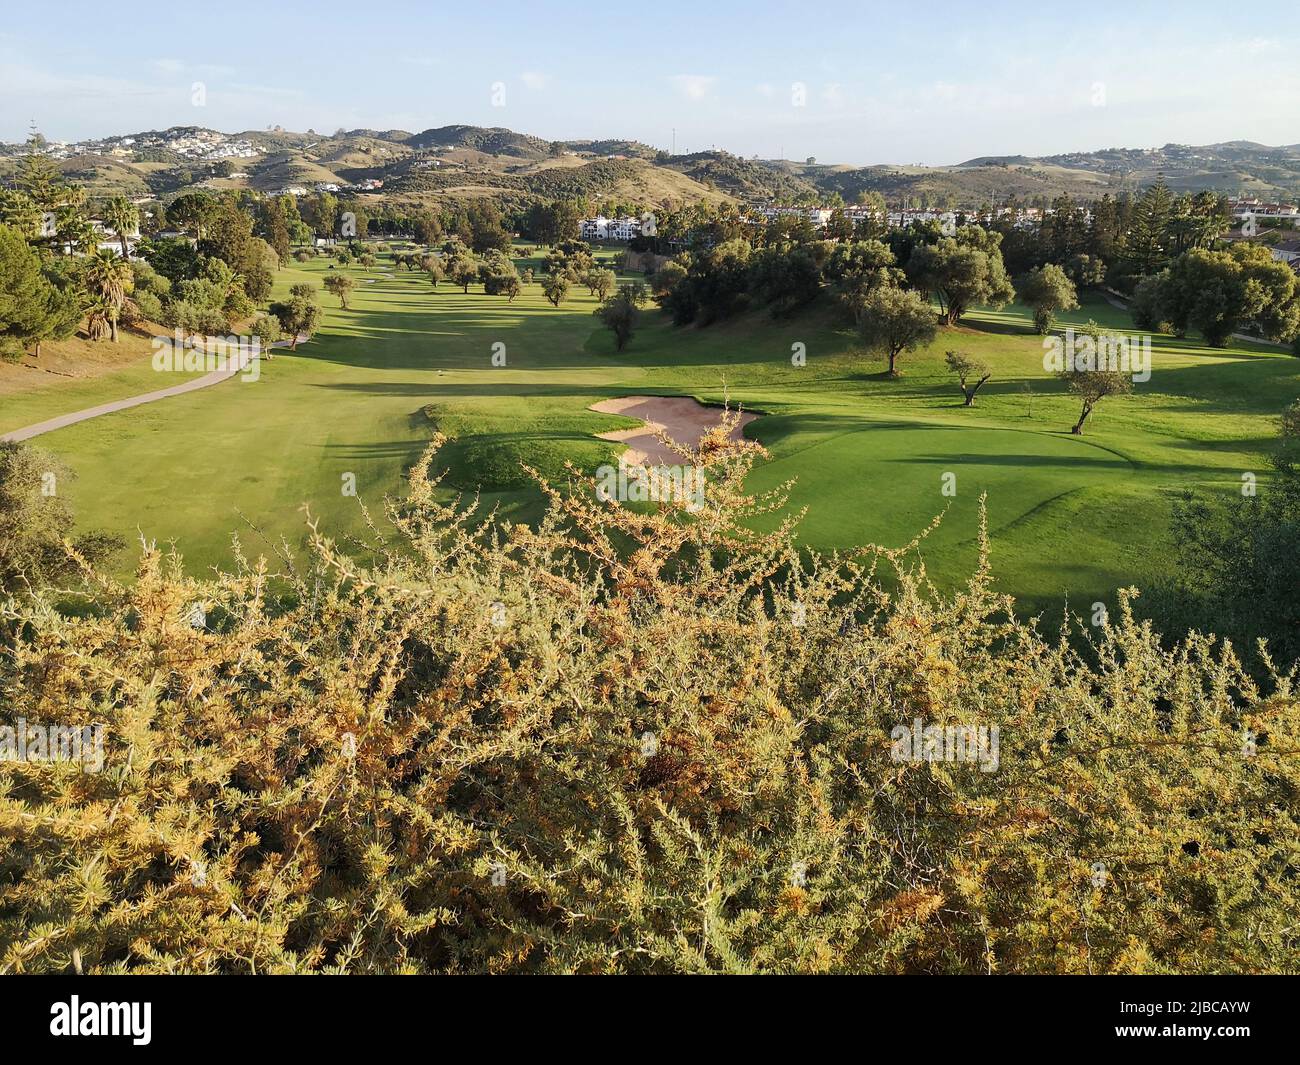 Parcours de golf 18 trous de Mijas, Los Olivos à Mjas Costa, Espagne Banque D'Images